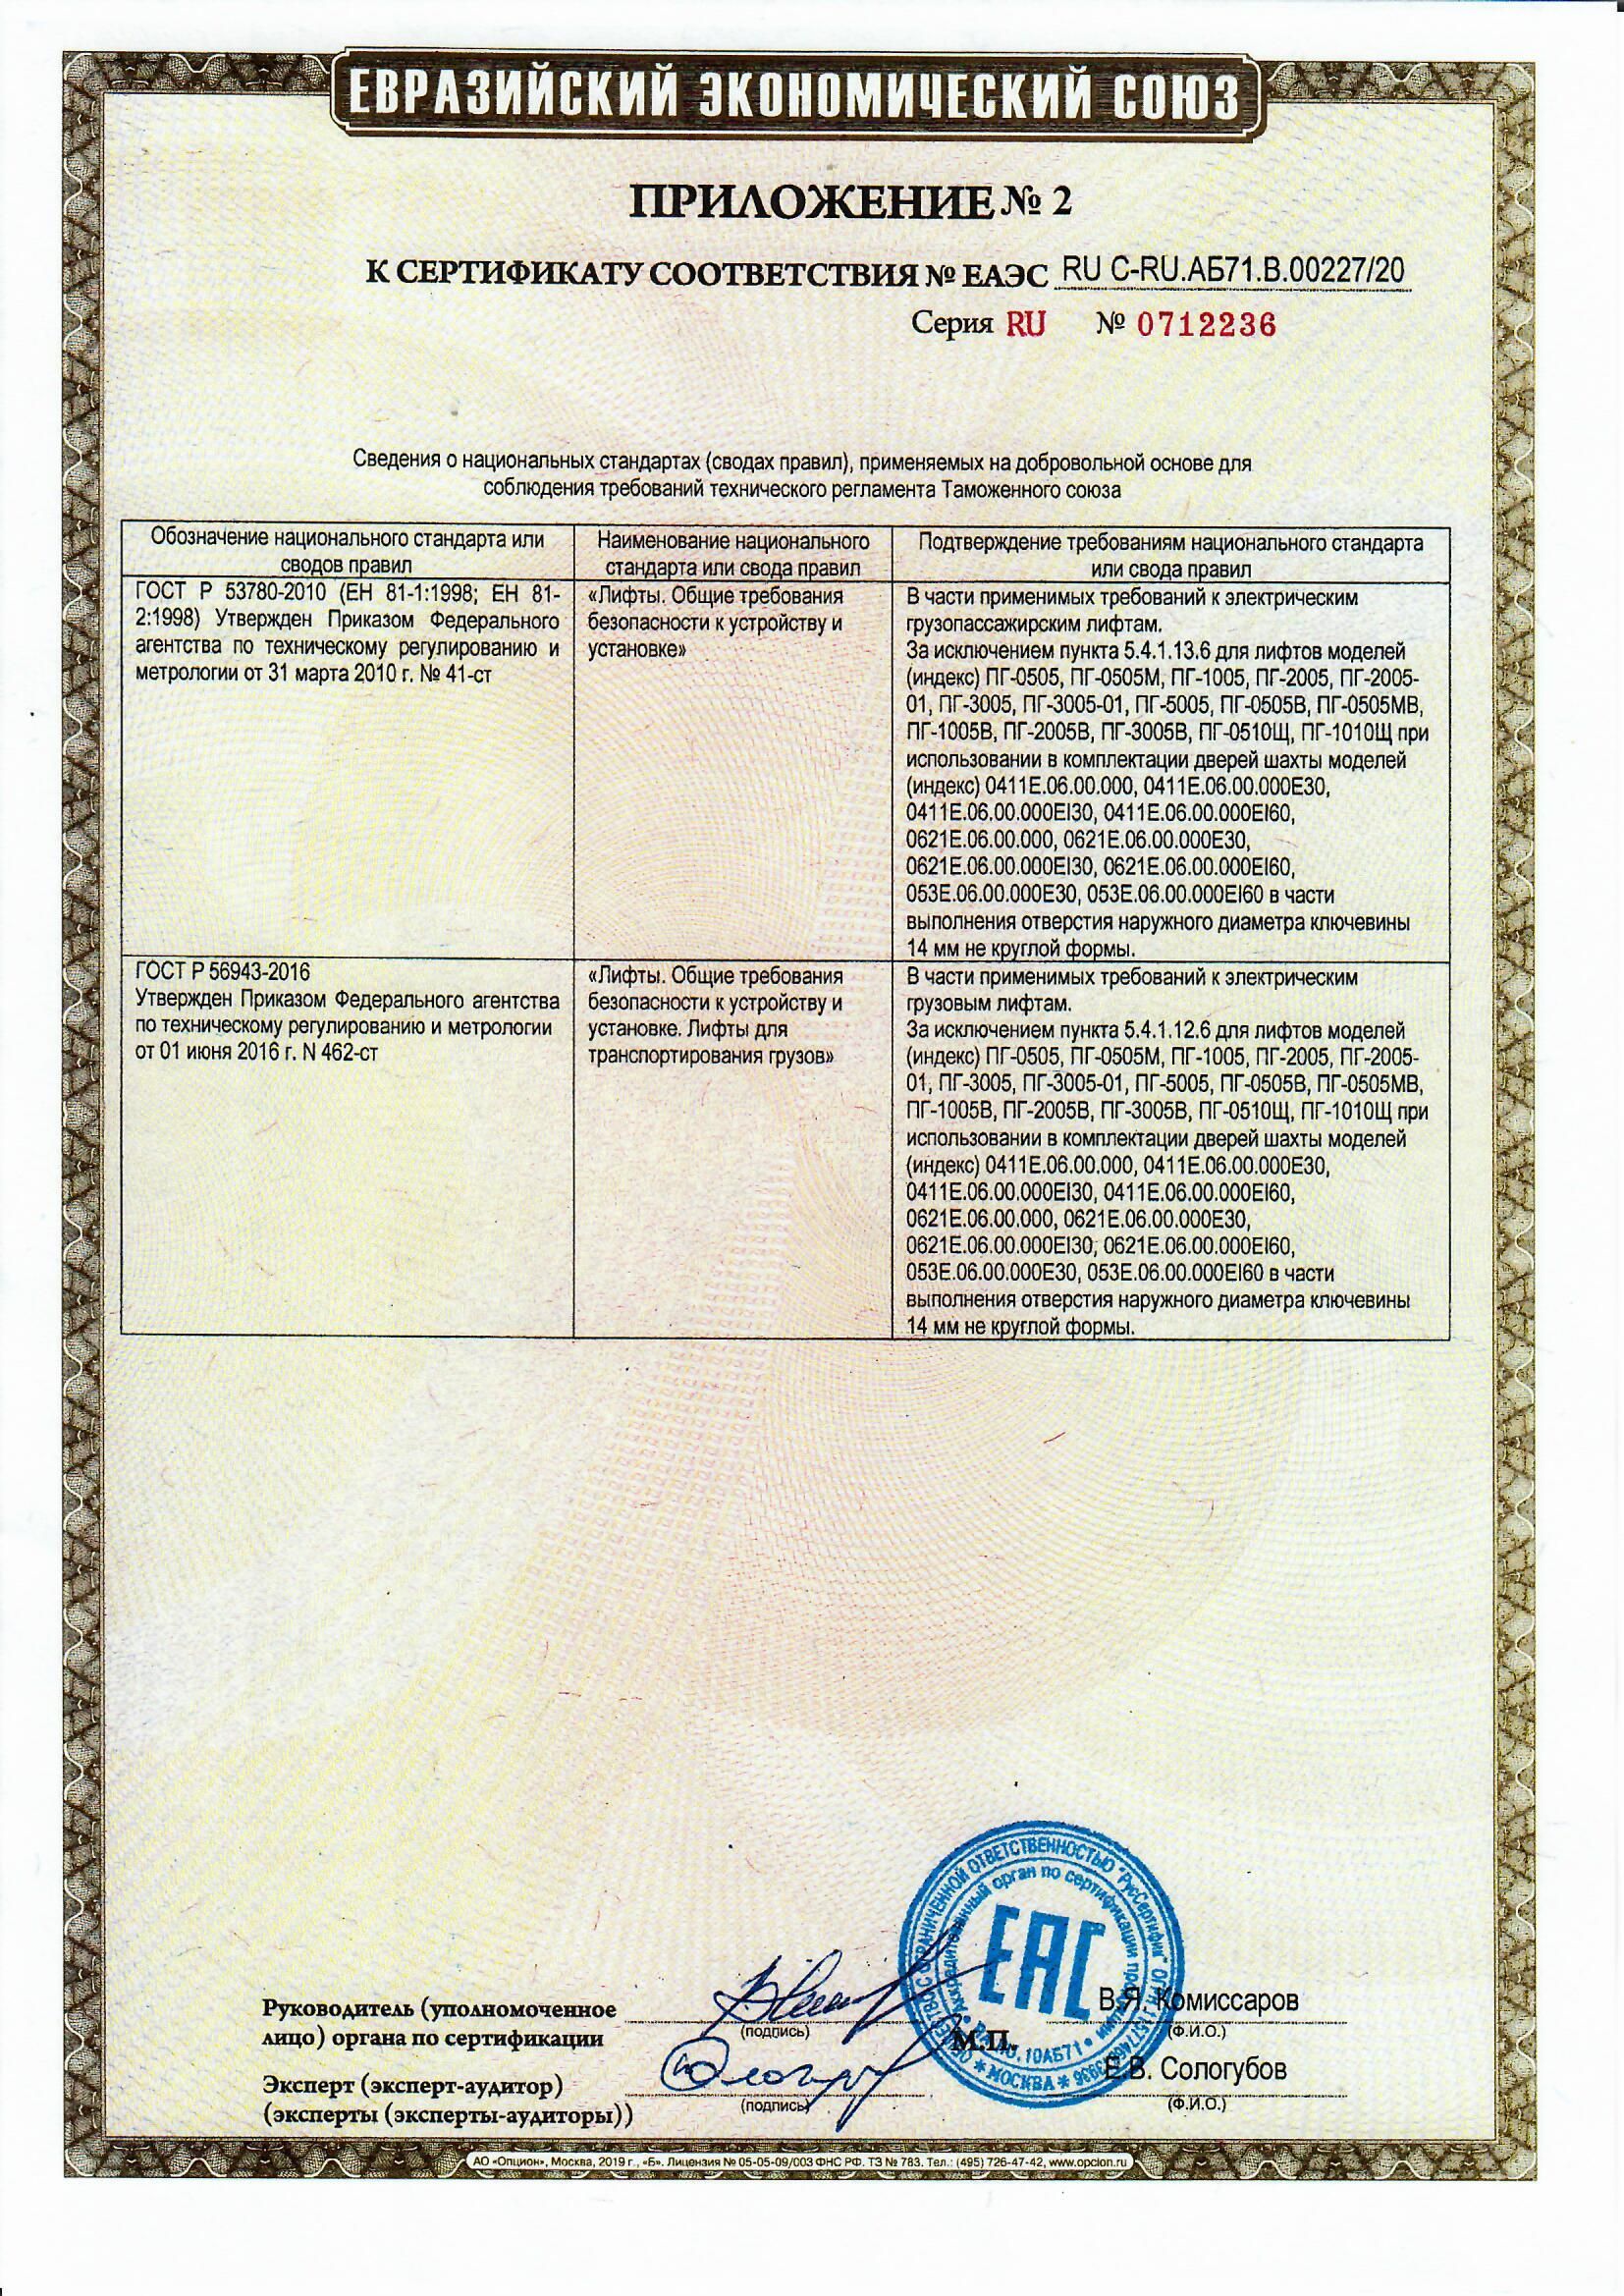 Приложение 2 к Сертификату RU С-RU.АБ71.В.00227/20